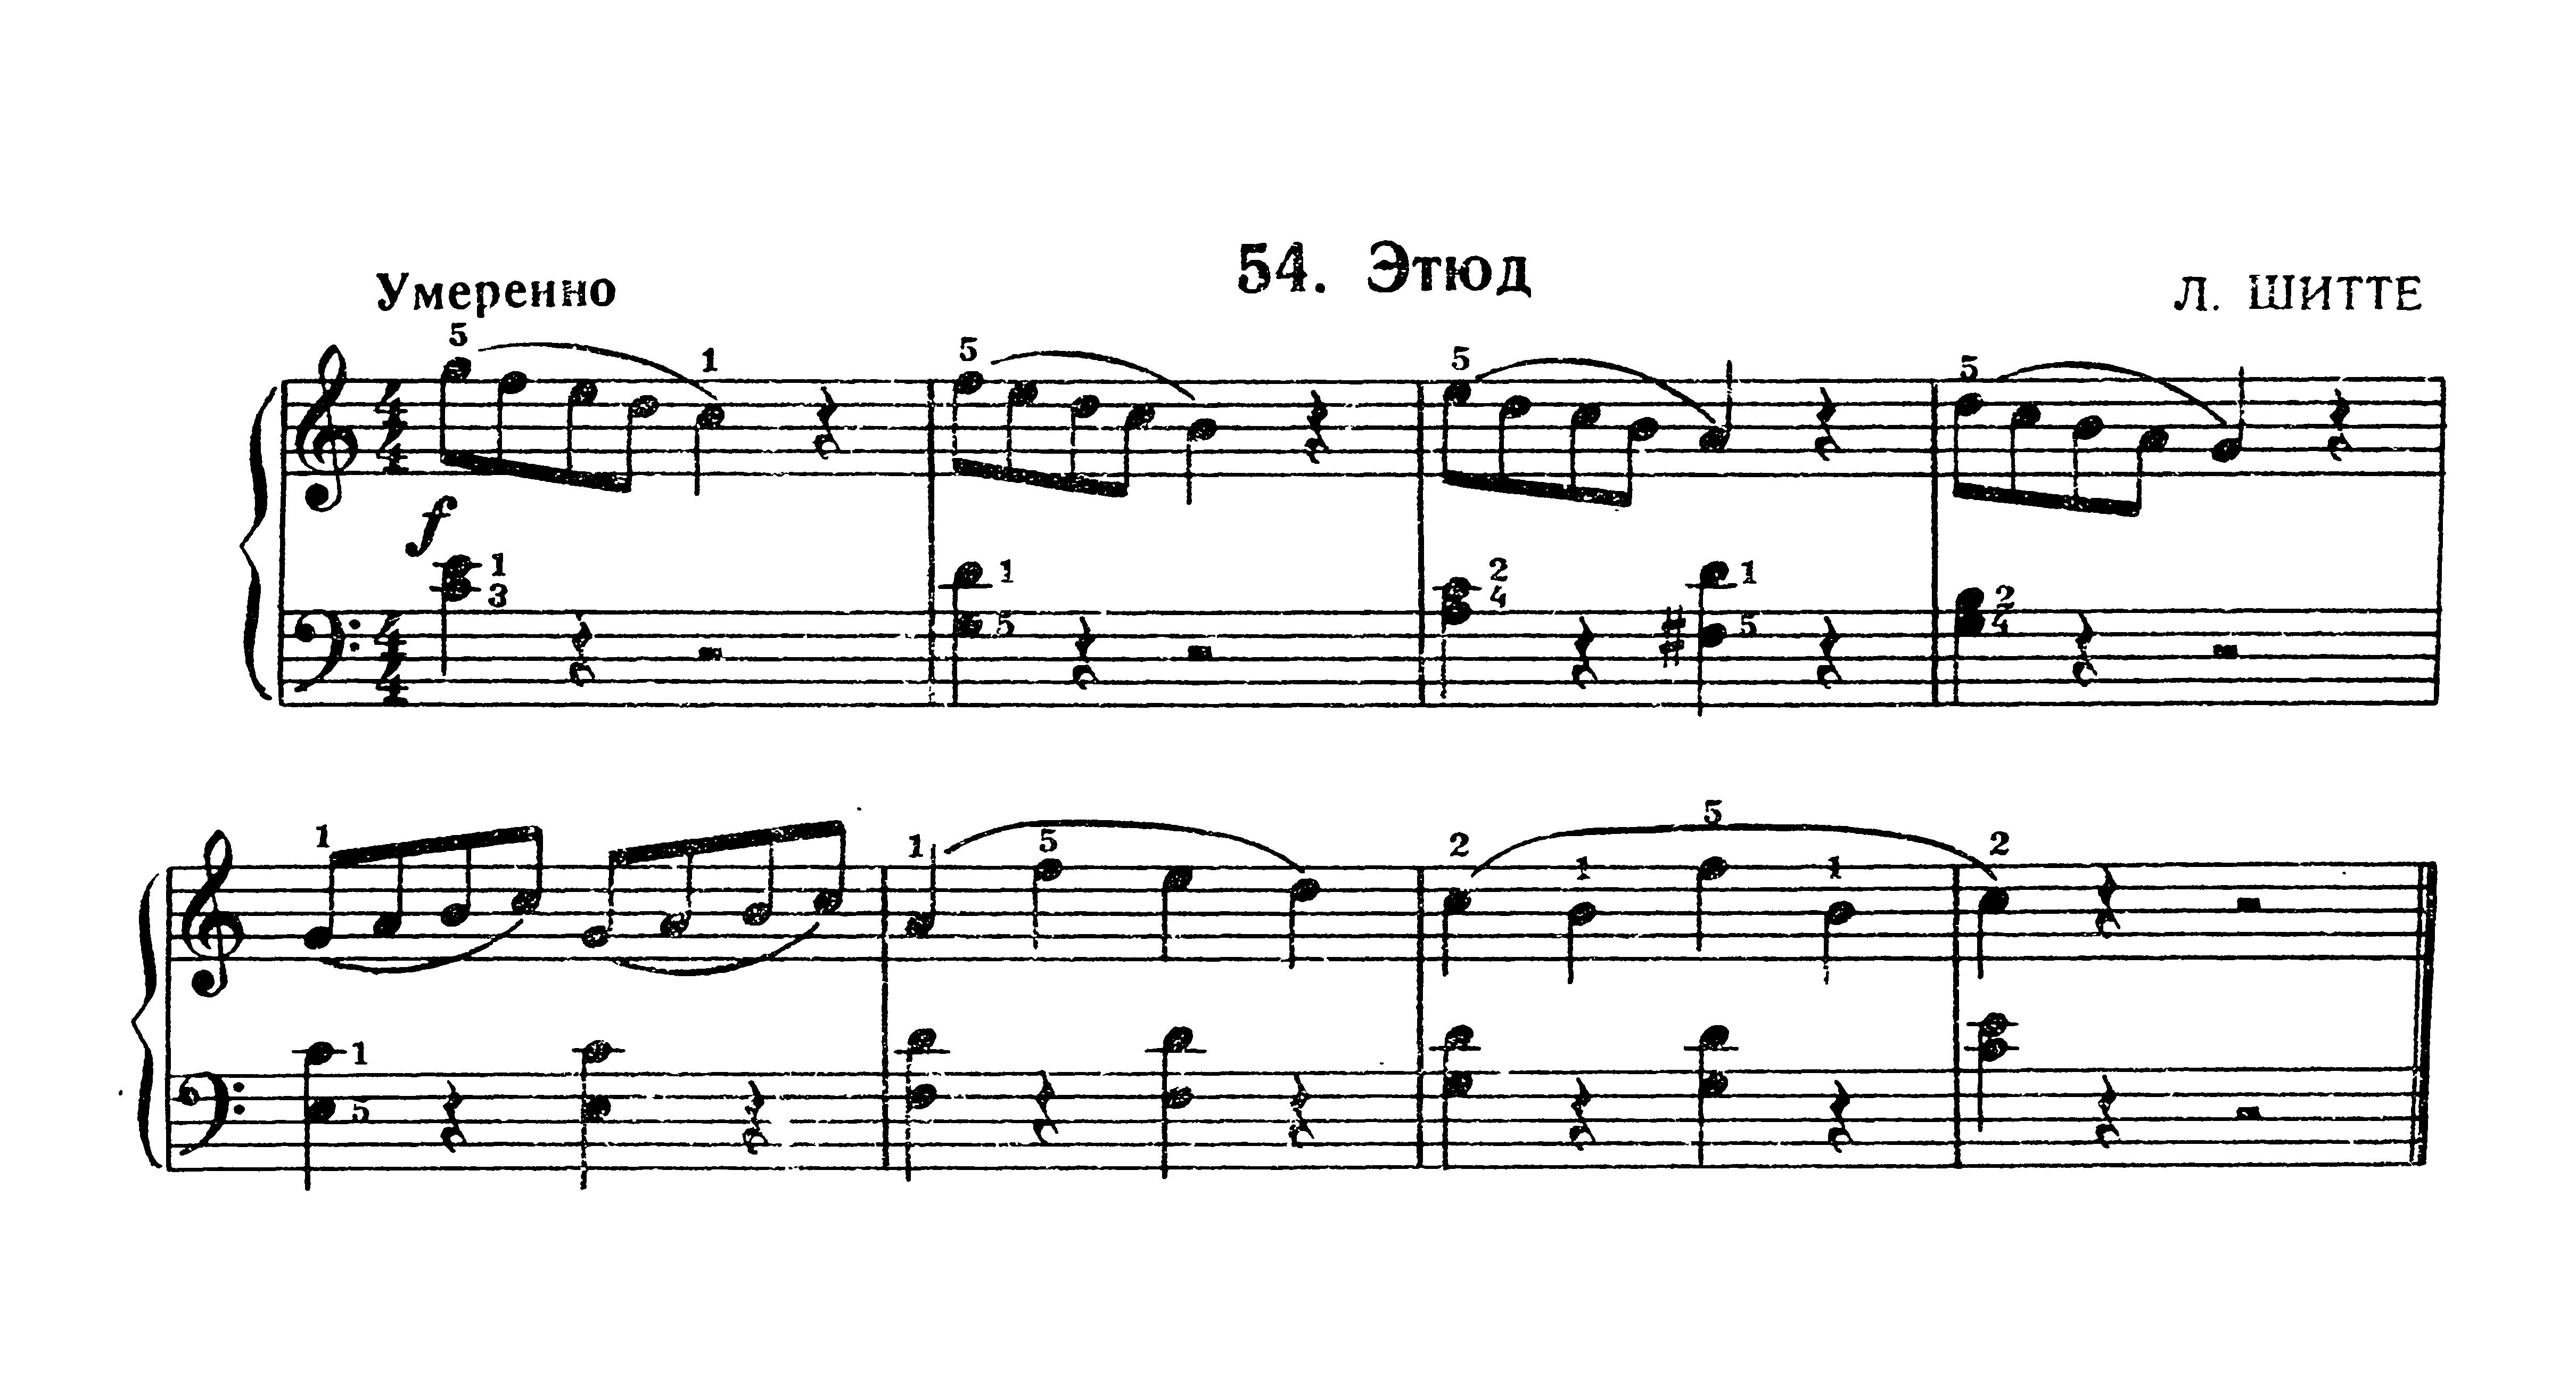 Пьесы №№42 - 65 из сборника "Фортепианная игра" (1 часть)